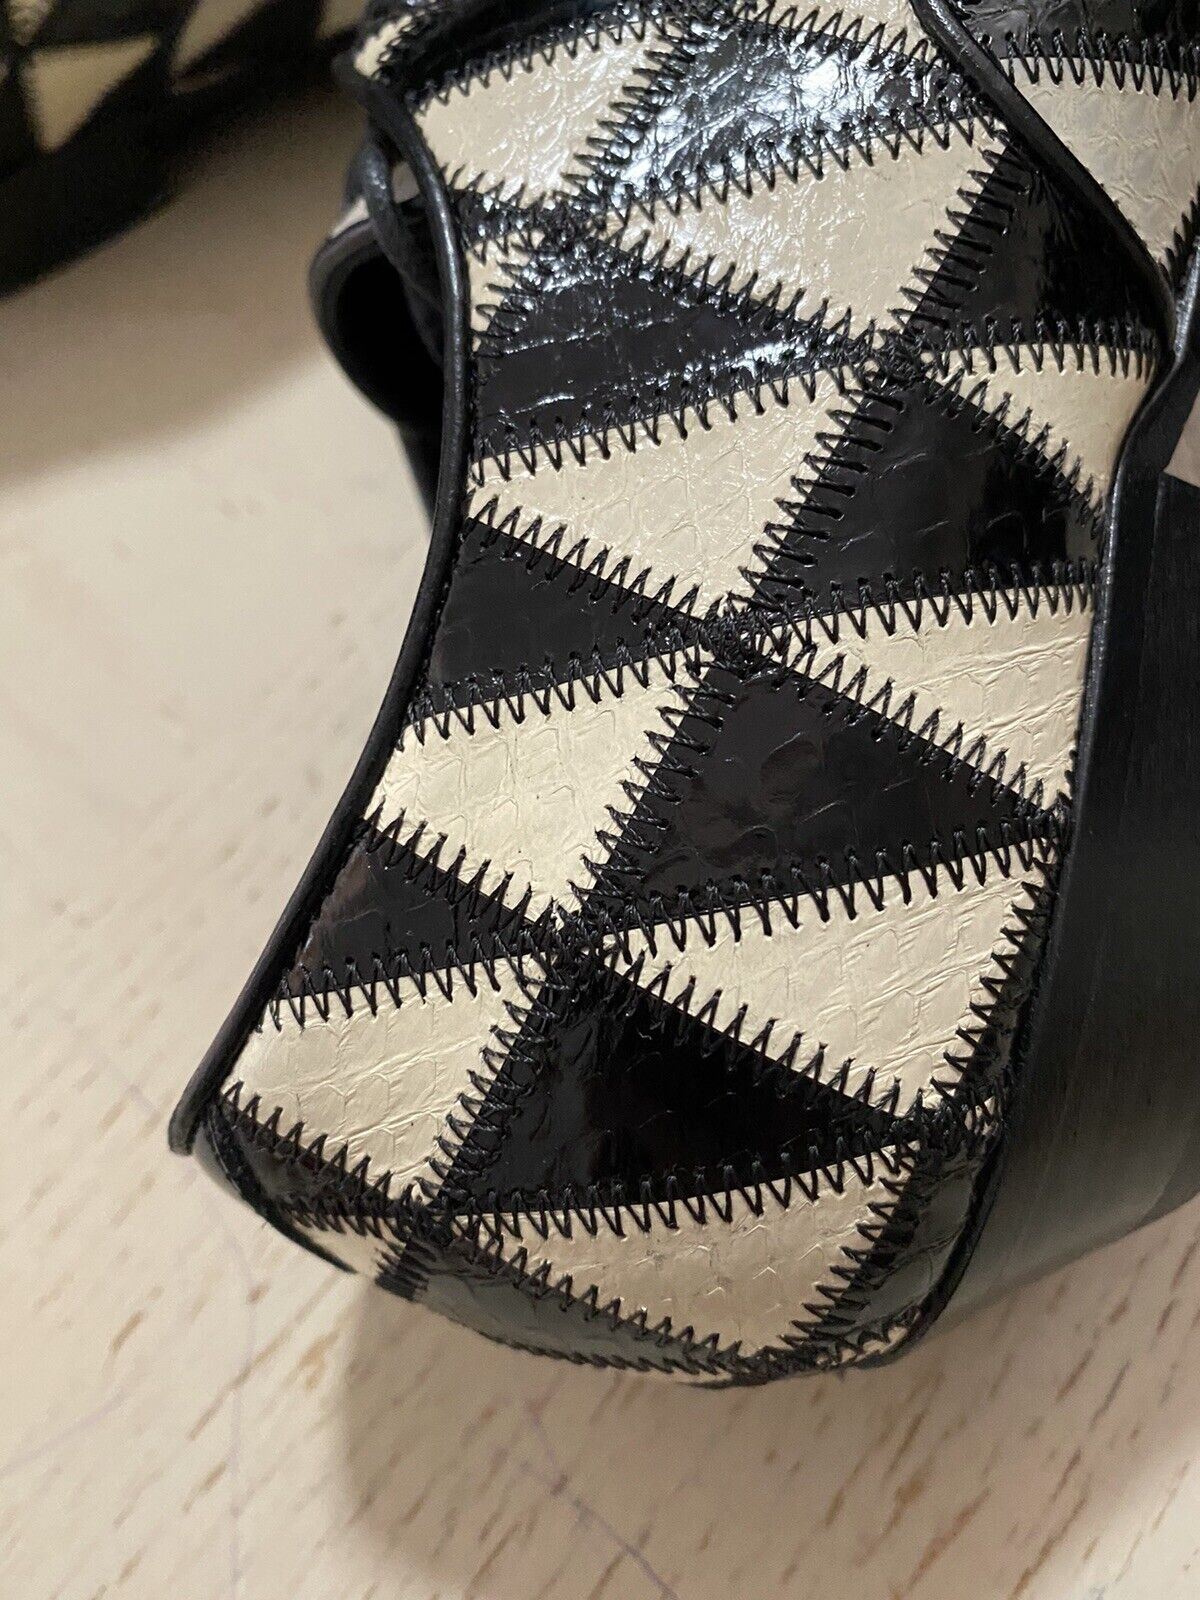 NIB $1795 Saint Laurent Женские кожаные туфли из питона черного/слоновой кости 8 США (38 евро)